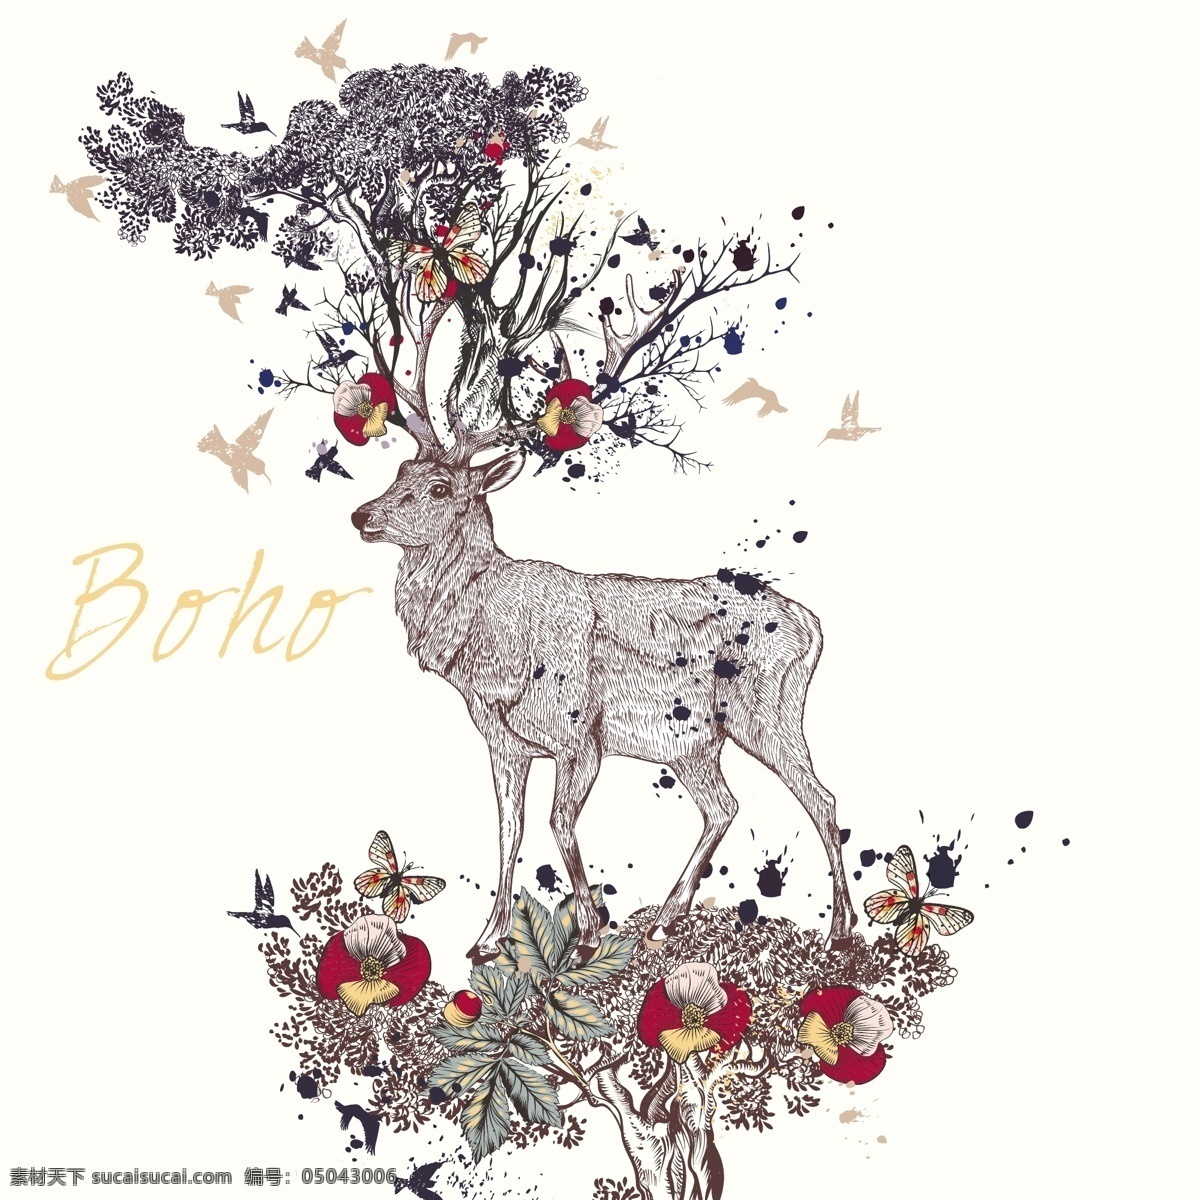 波西 米亚 背景 花卉 抽象的设计 一方面 动物 手绘 饰品 鹿 羽毛 装饰 印度 绘画 民族 波希米亚 花饰 部落 观赏